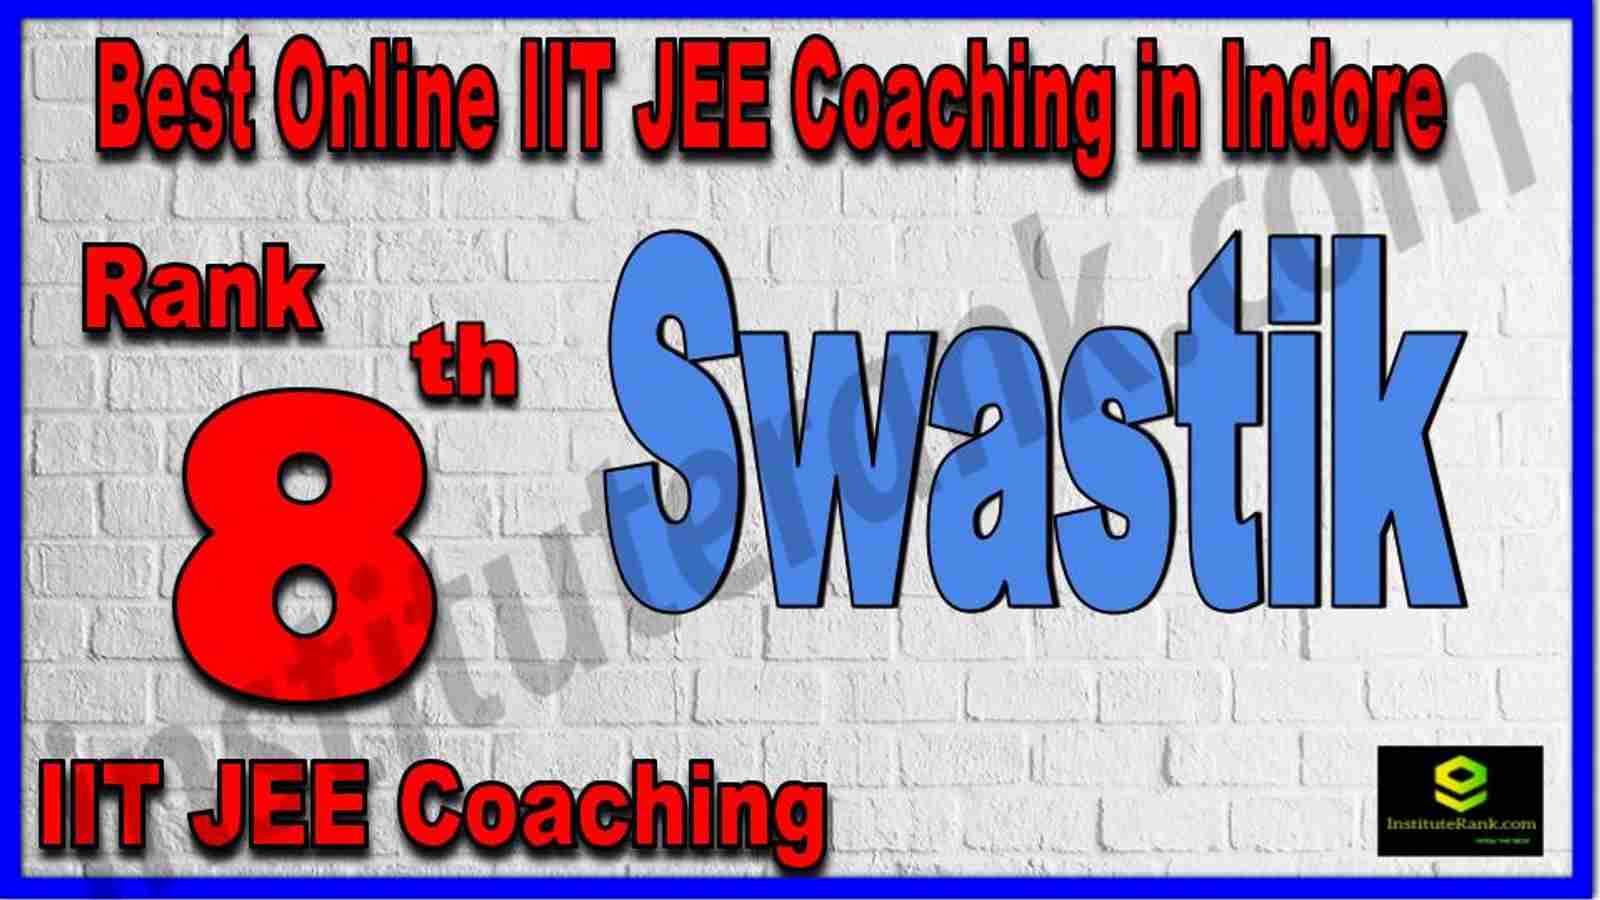 Rank 8th Best Online IIT JEE Coaching in Indore